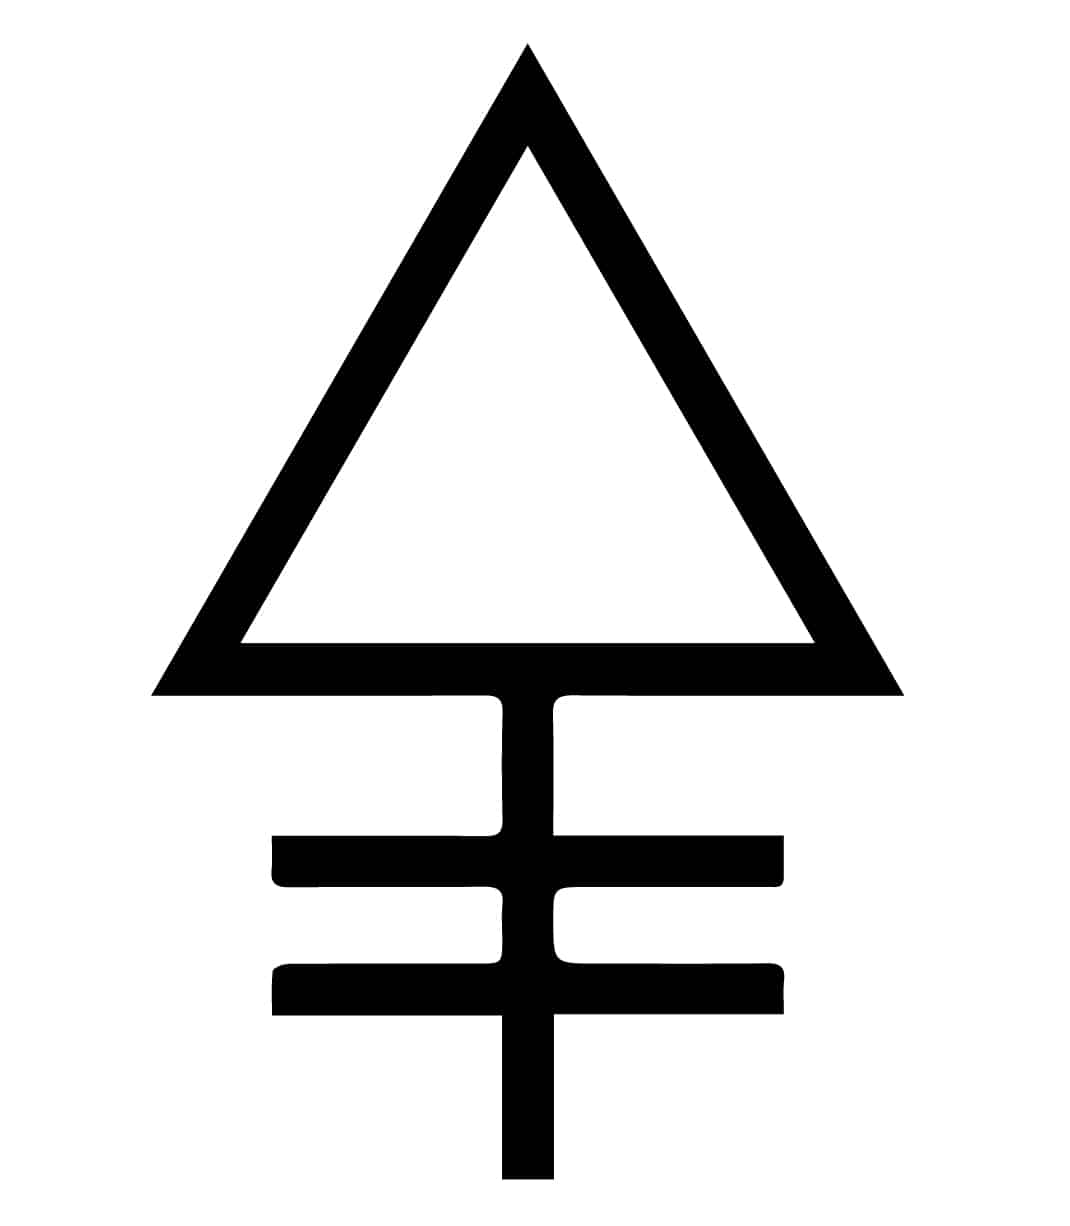 Símbolos de la alquimia y sus significados - La lista ampliada de símbolos alquímicos